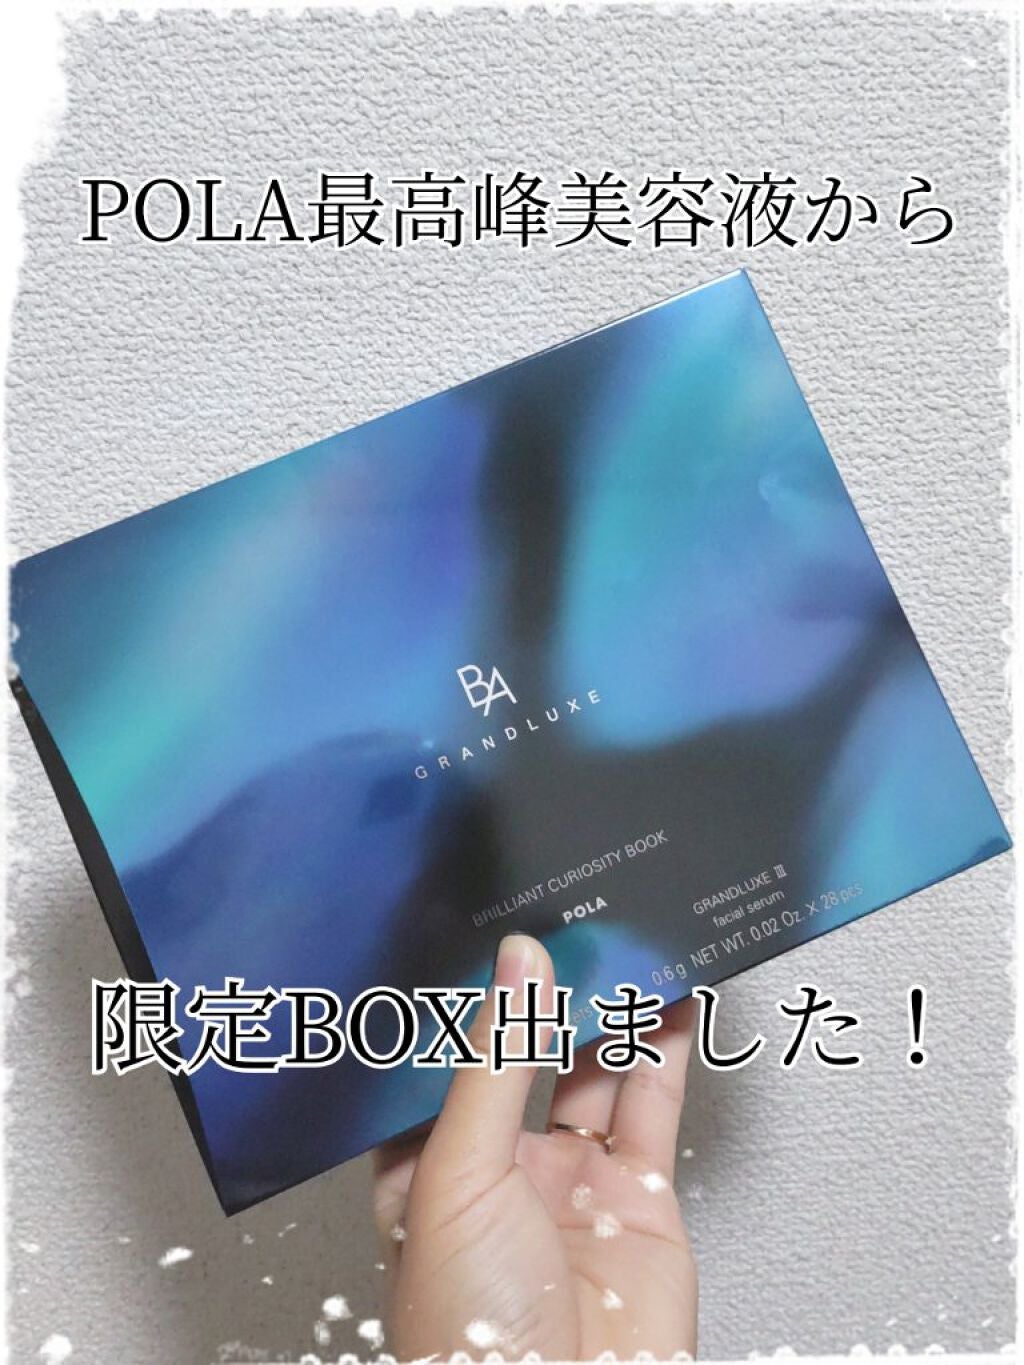 【新品】POLA BA グランラグゼIII ブリリアント キュリオシティブック